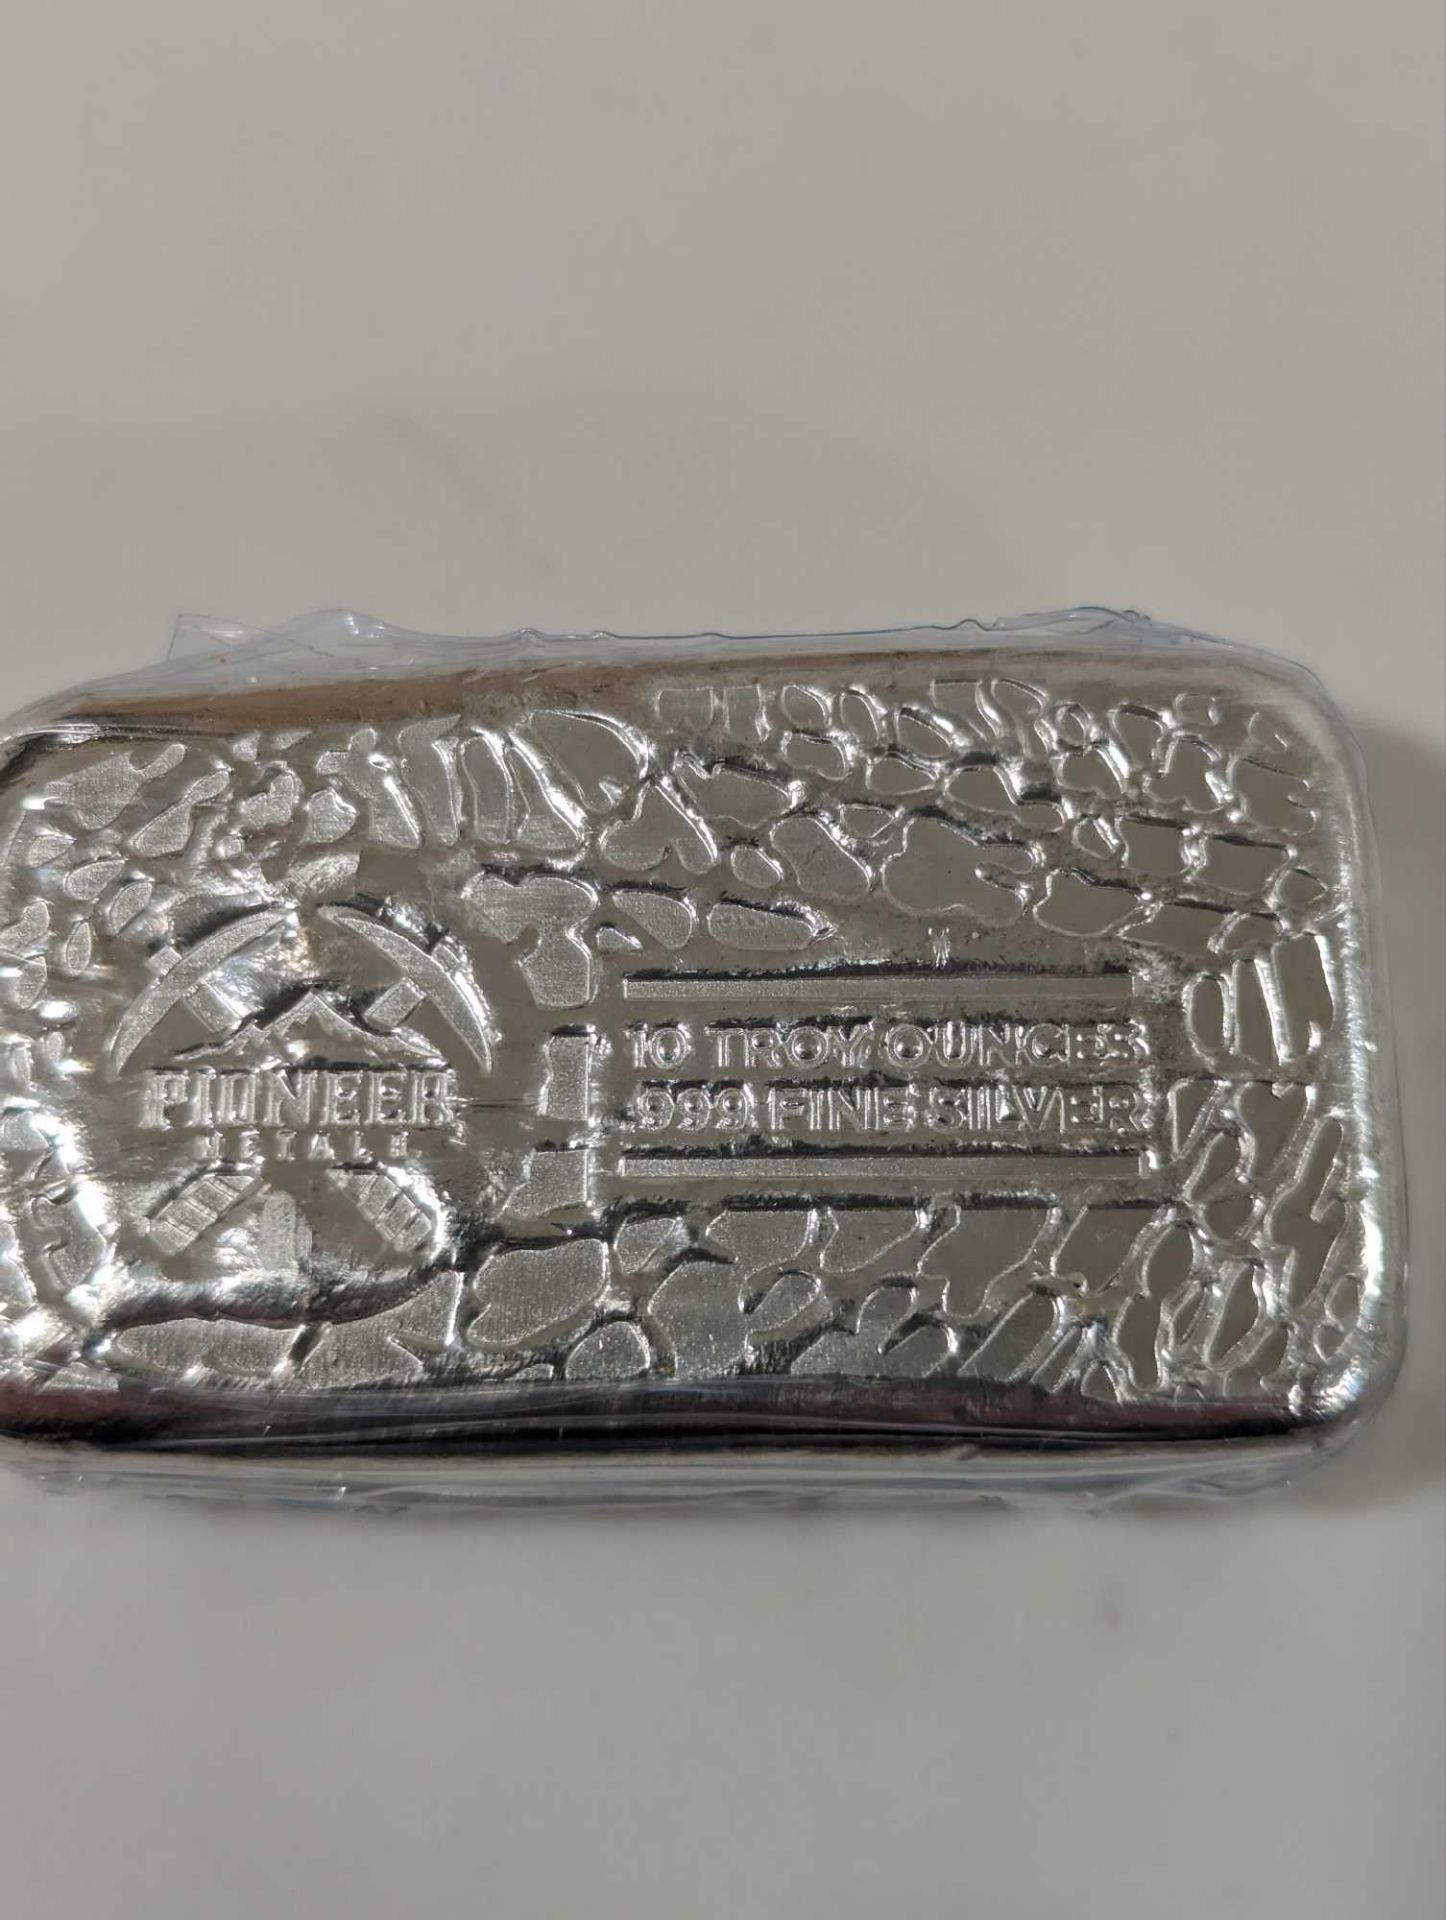 10 oz silver bar pioneer metal - Image 2 of 2